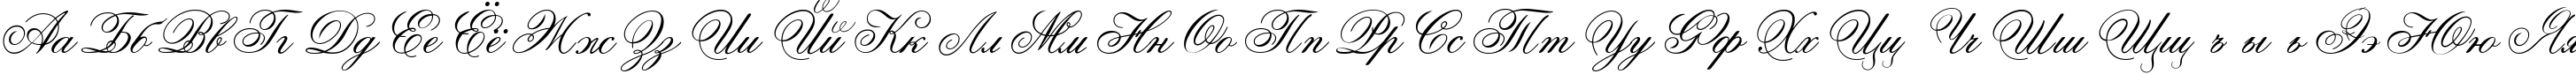 Пример написания русского алфавита шрифтом Ouverture script